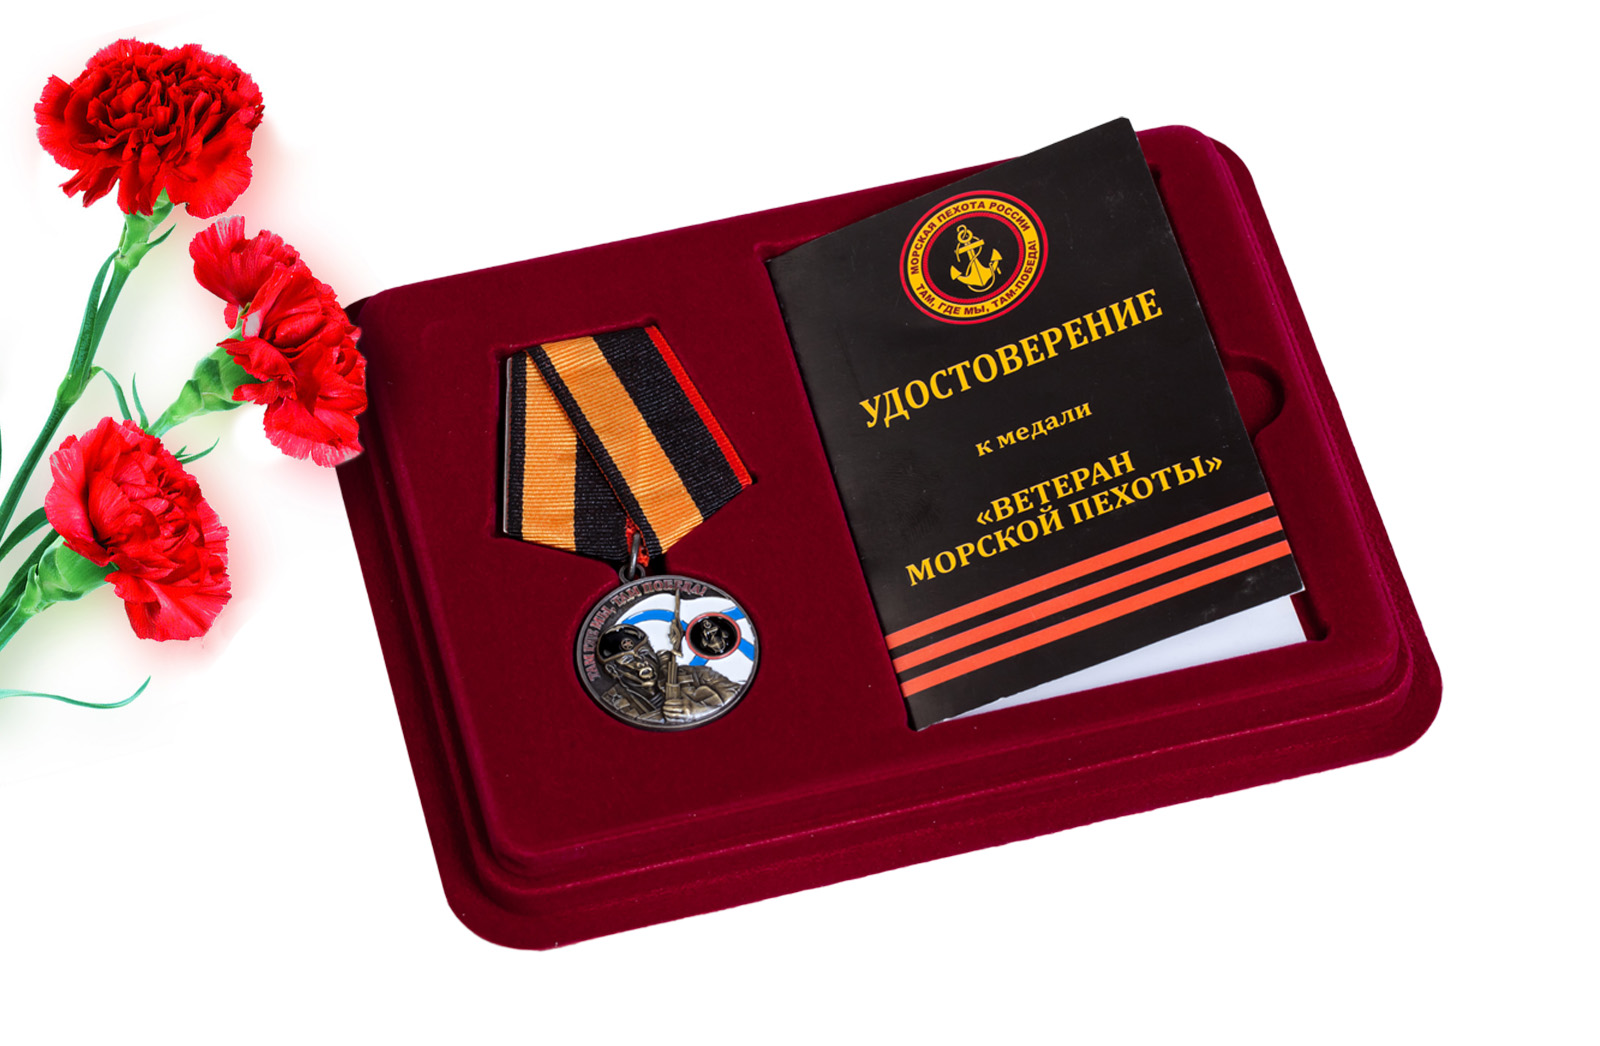 Купить медаль Ветерану Морской пехоты с доставкой в ваш город